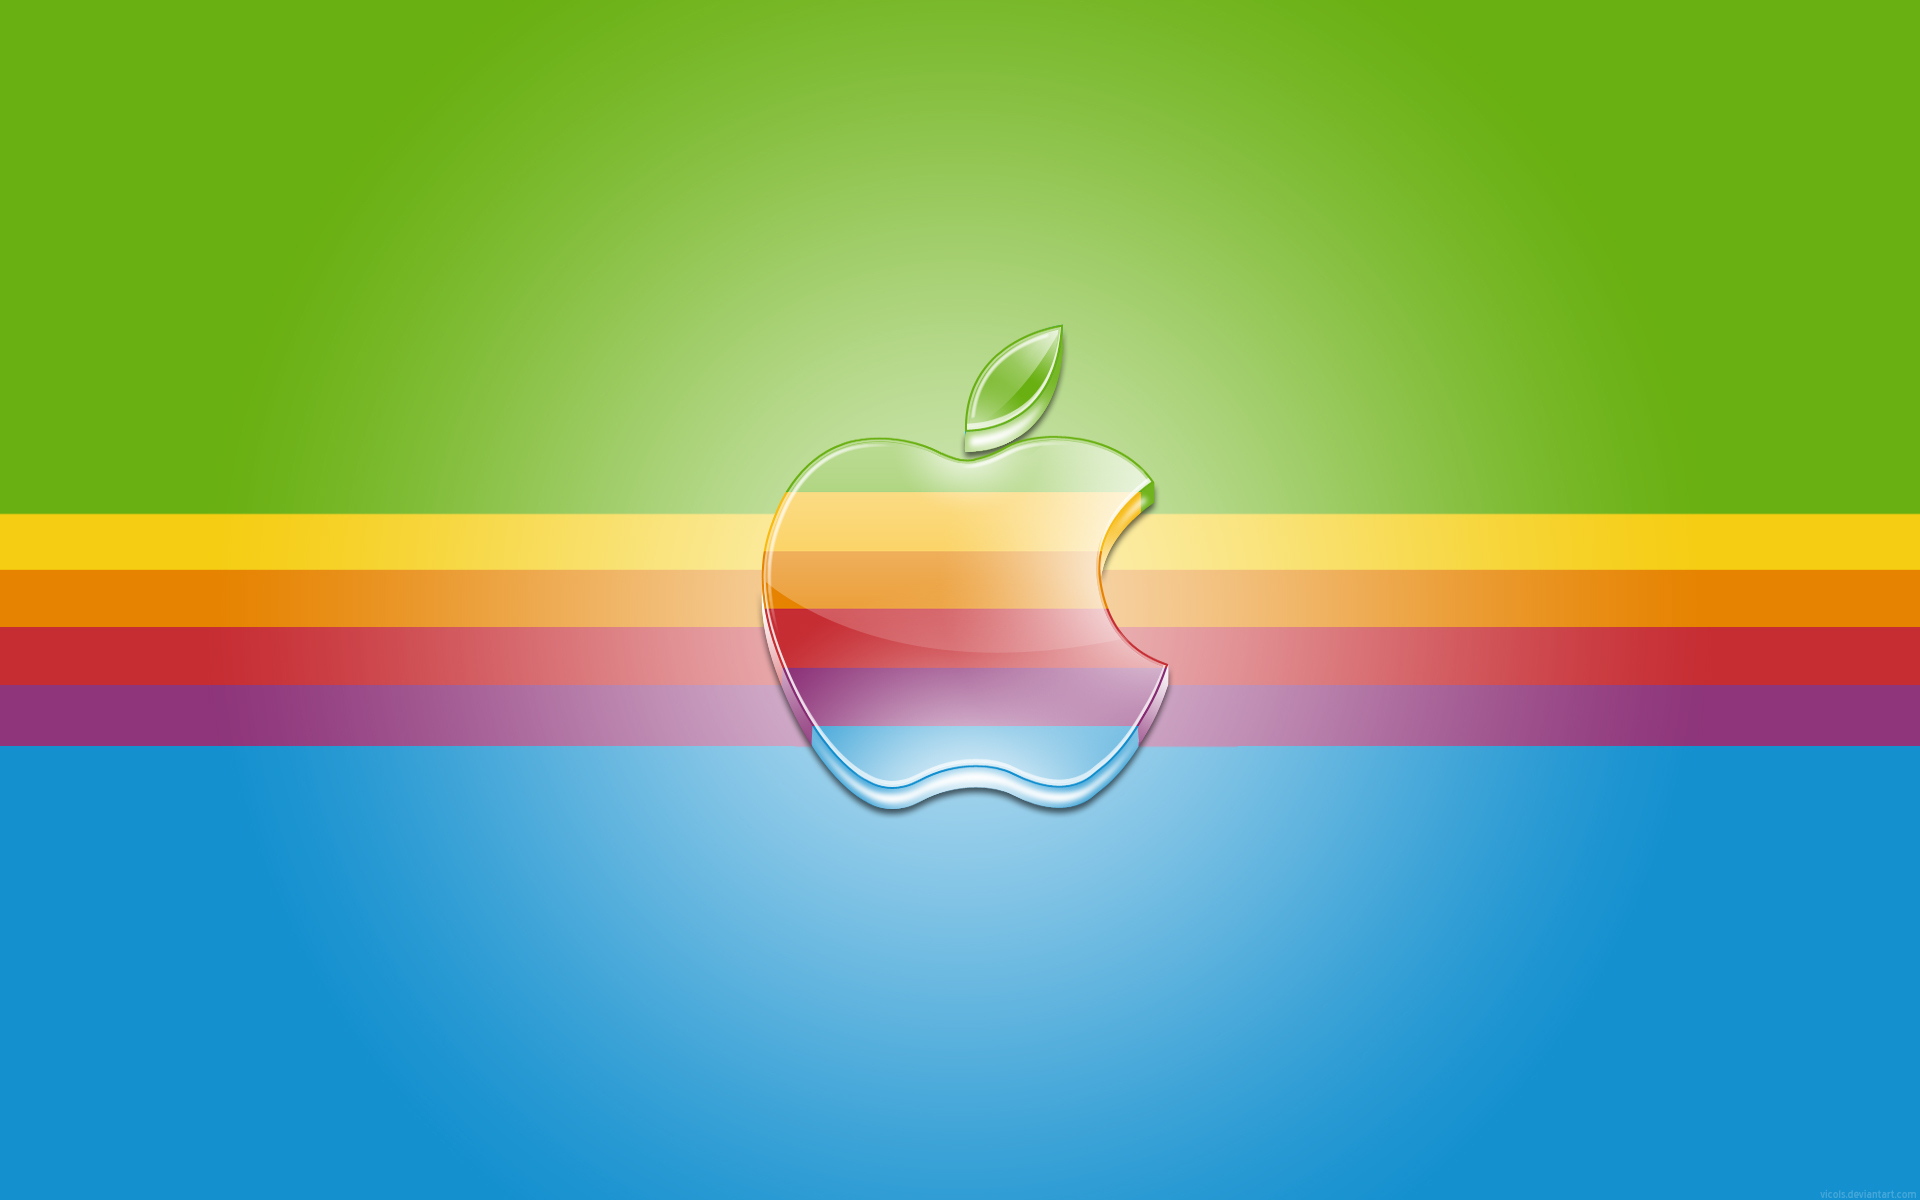 🔥 [49+] Free Apple Live Wallpapers | WallpaperSafari